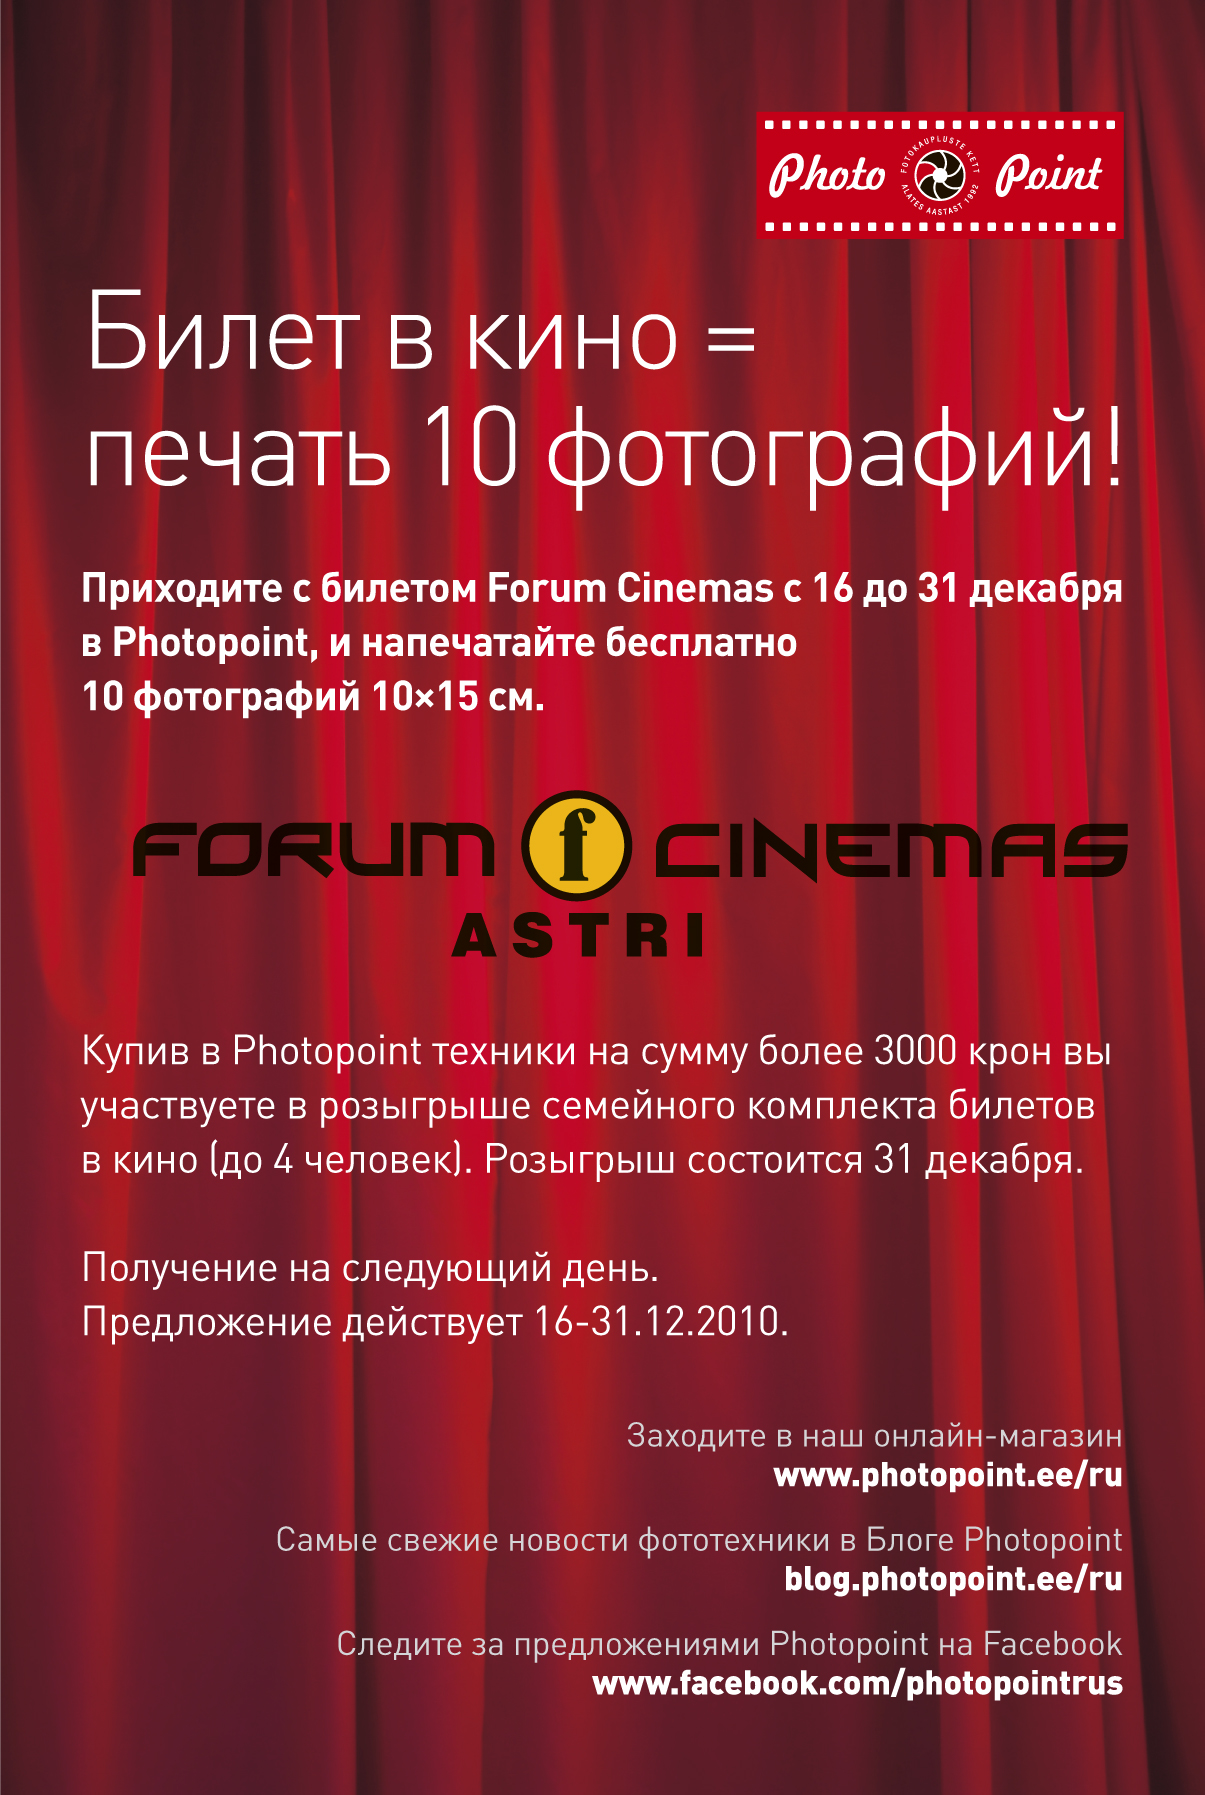 Билет в кино = бесплатная печать 10 фотографи в Photopoint